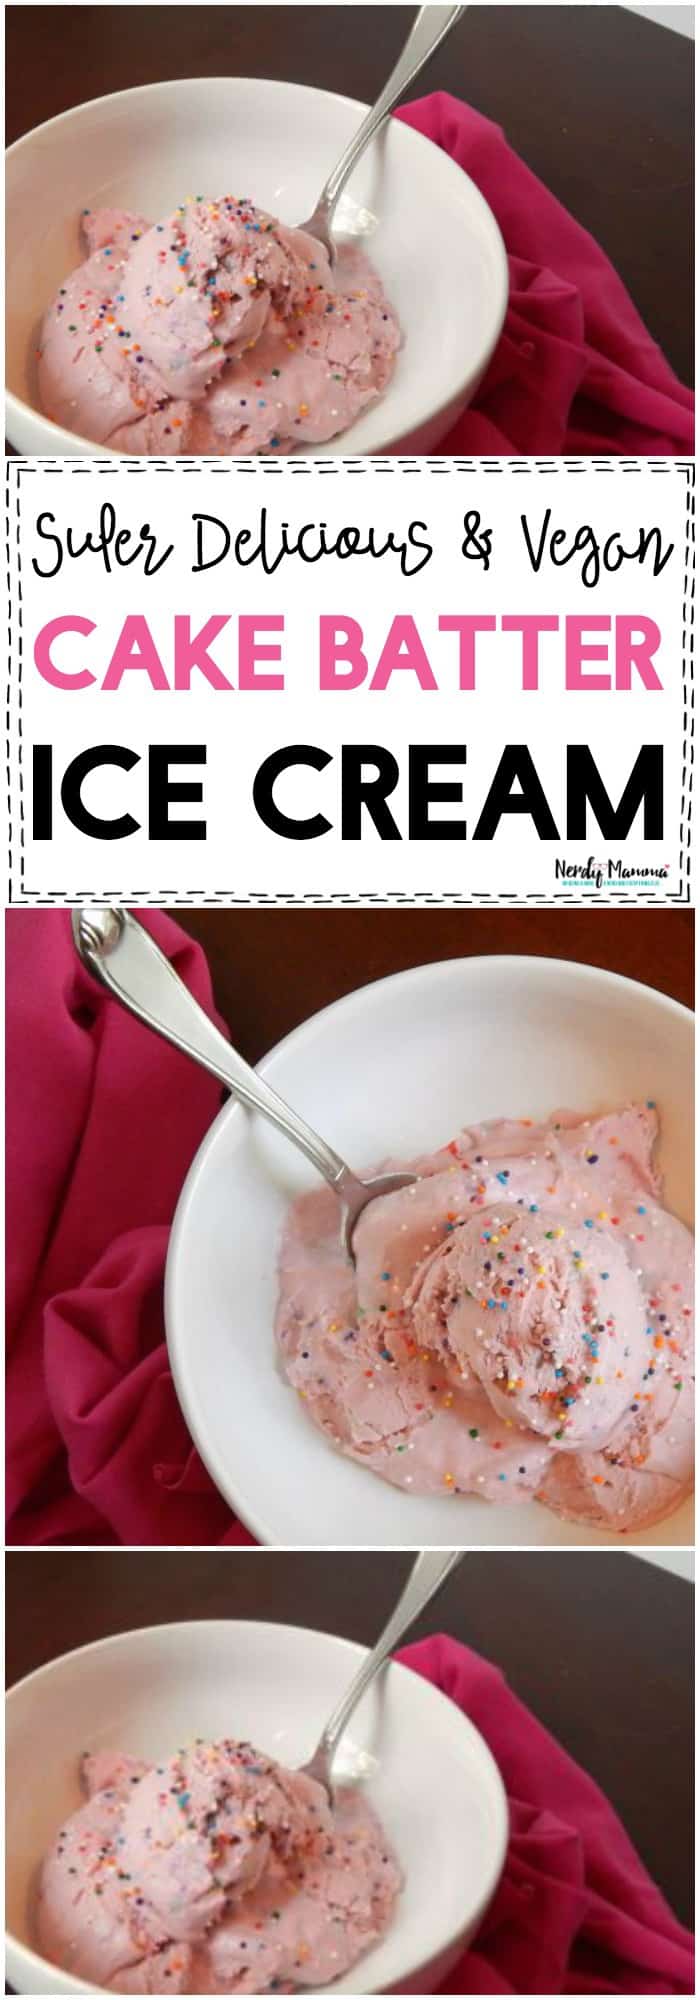 Super Delicious & Vegan Cake Batter Ice Cream!